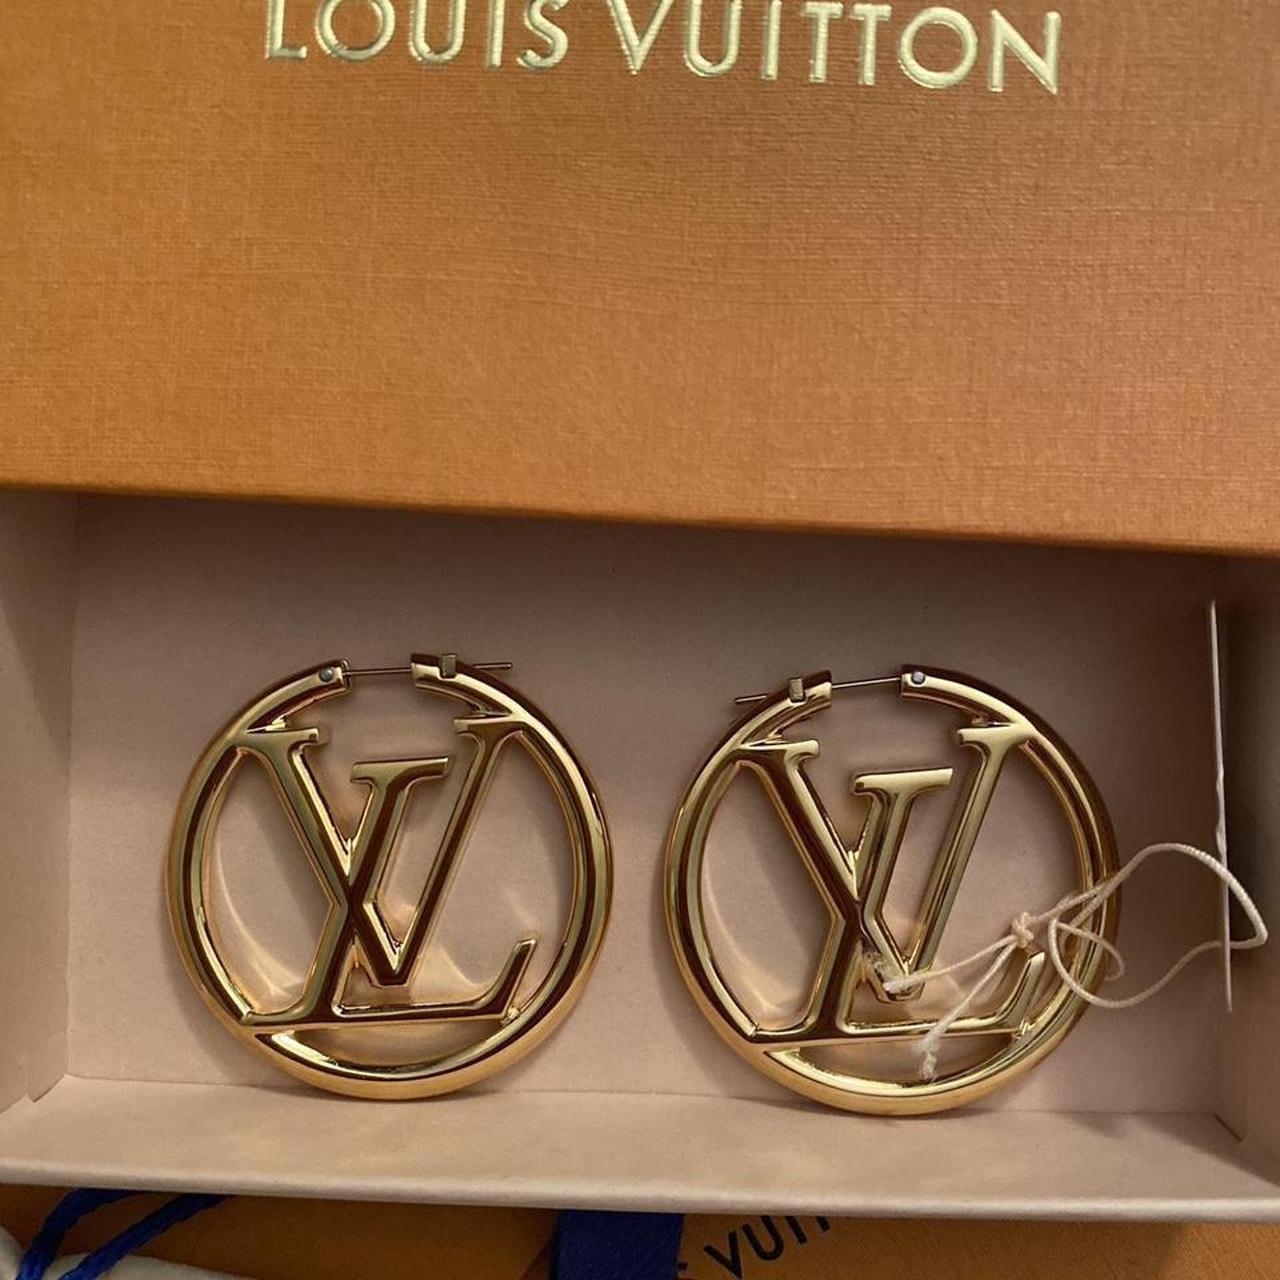 Louis Vuitton Blue Lace Ribbon #louisvuitton #bow - Depop